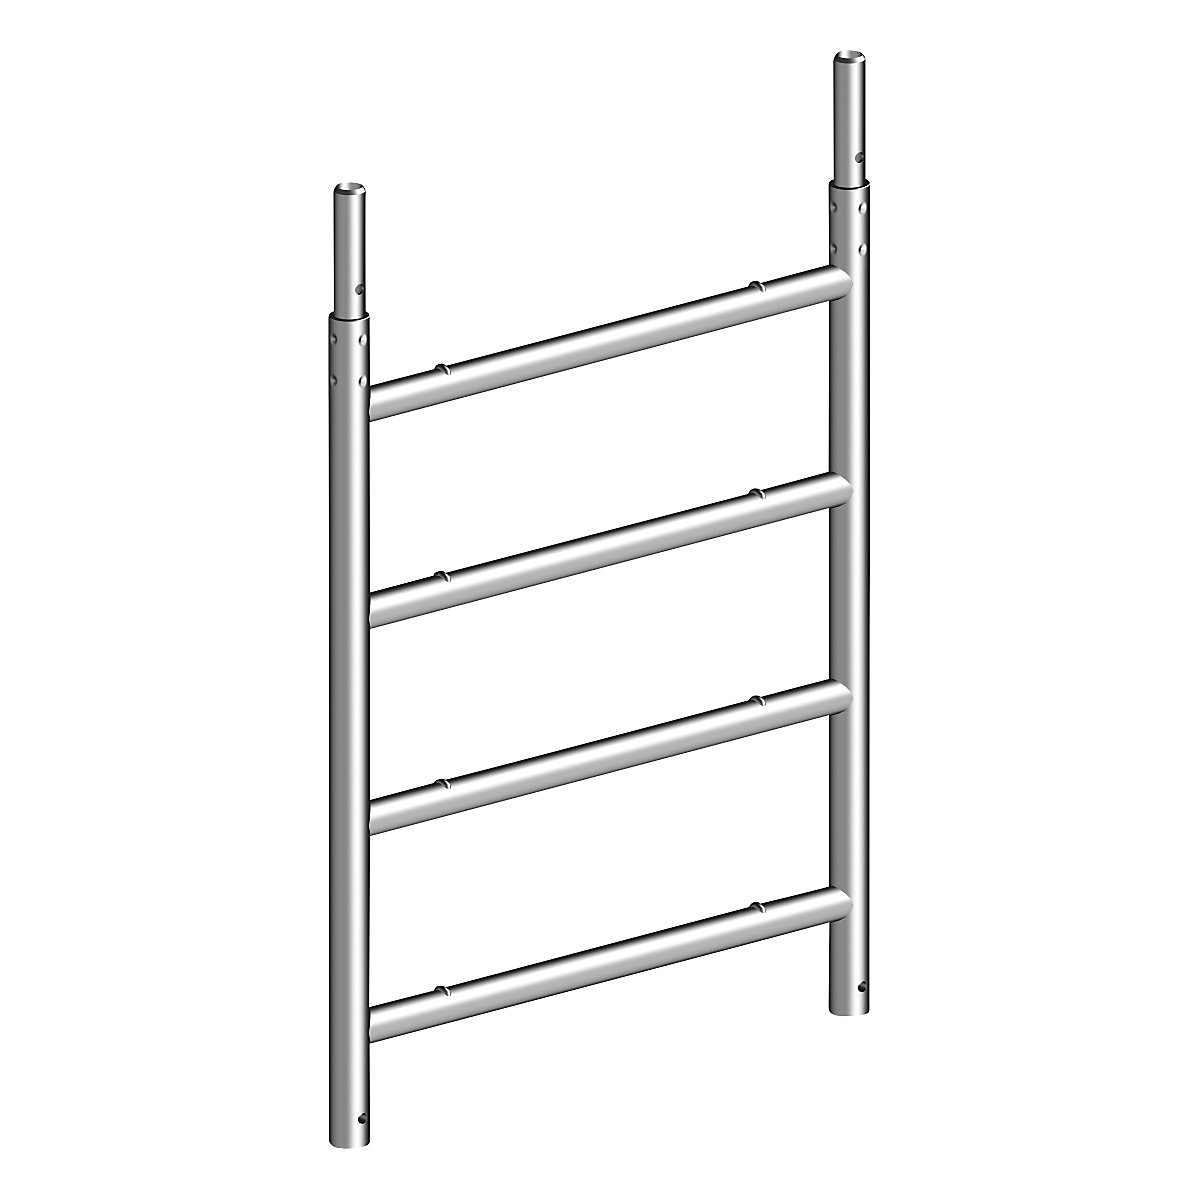 Standaard ladder – Layher